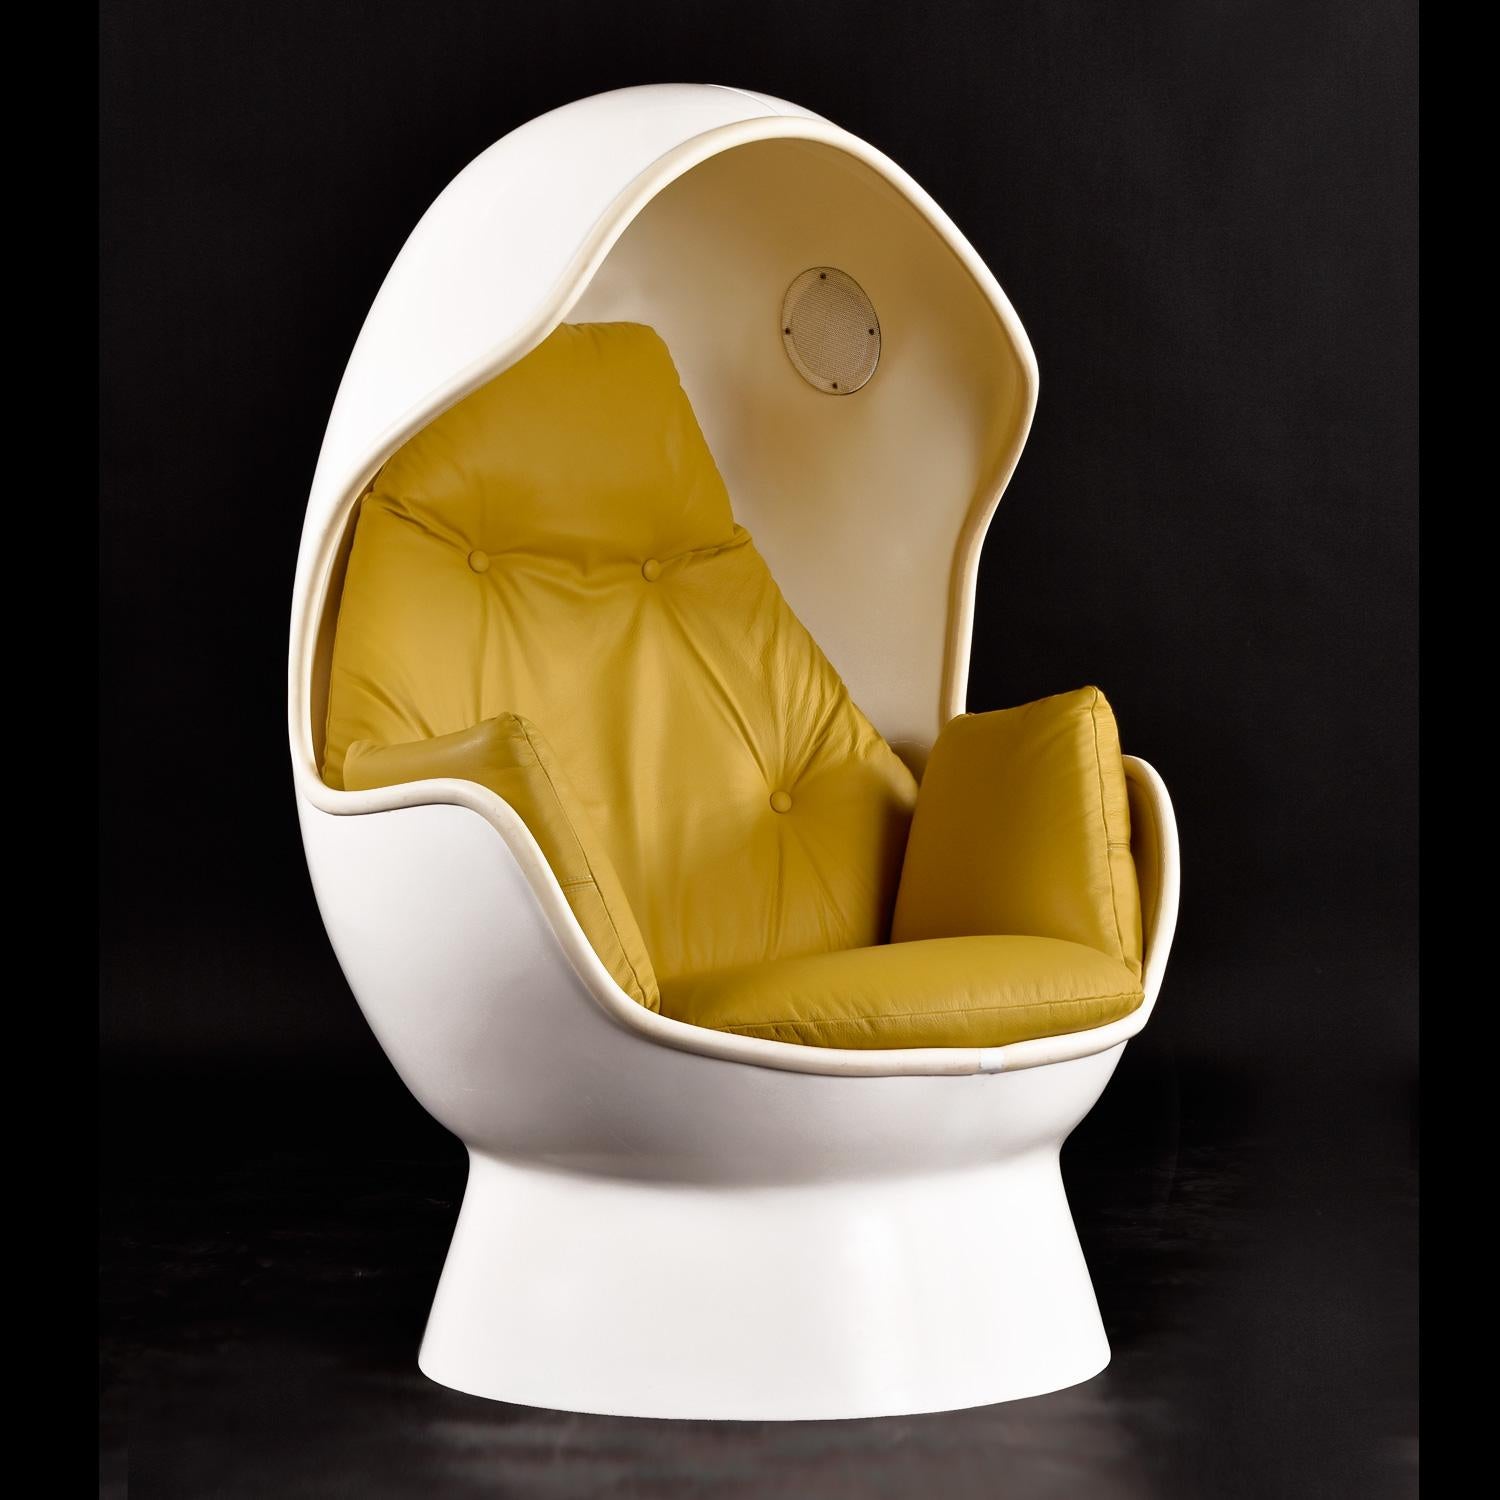 Fin du 20e siècle Chaise et pouf stéréo Pod vintage Panasonic en cuir jaune